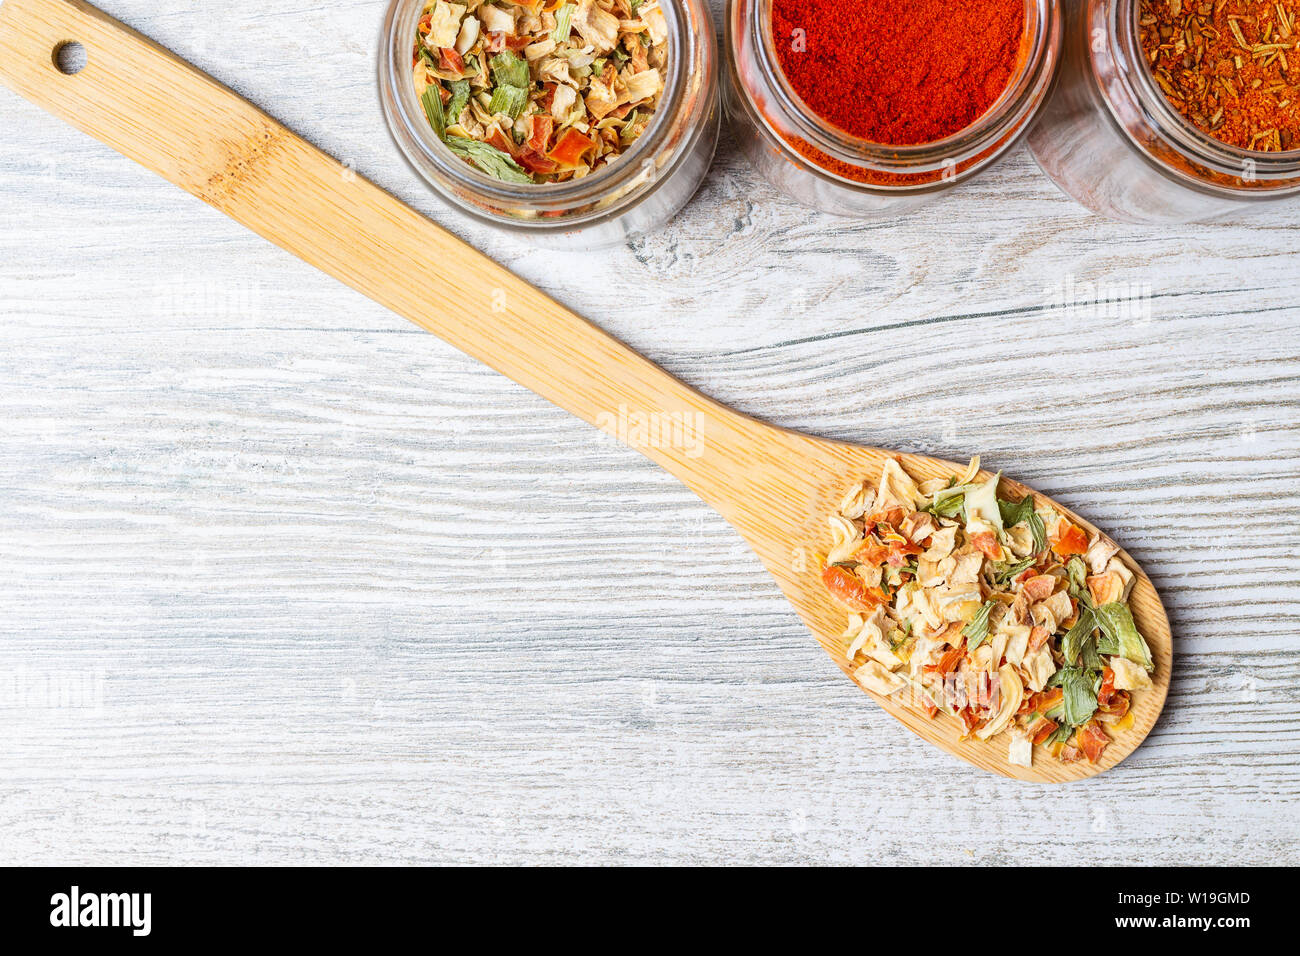 Spezie e liofilizzata verdure sul bancone della cucina. I vasetti con spezie e verdure essiccate su un cucchiaio di legno. Foto Stock